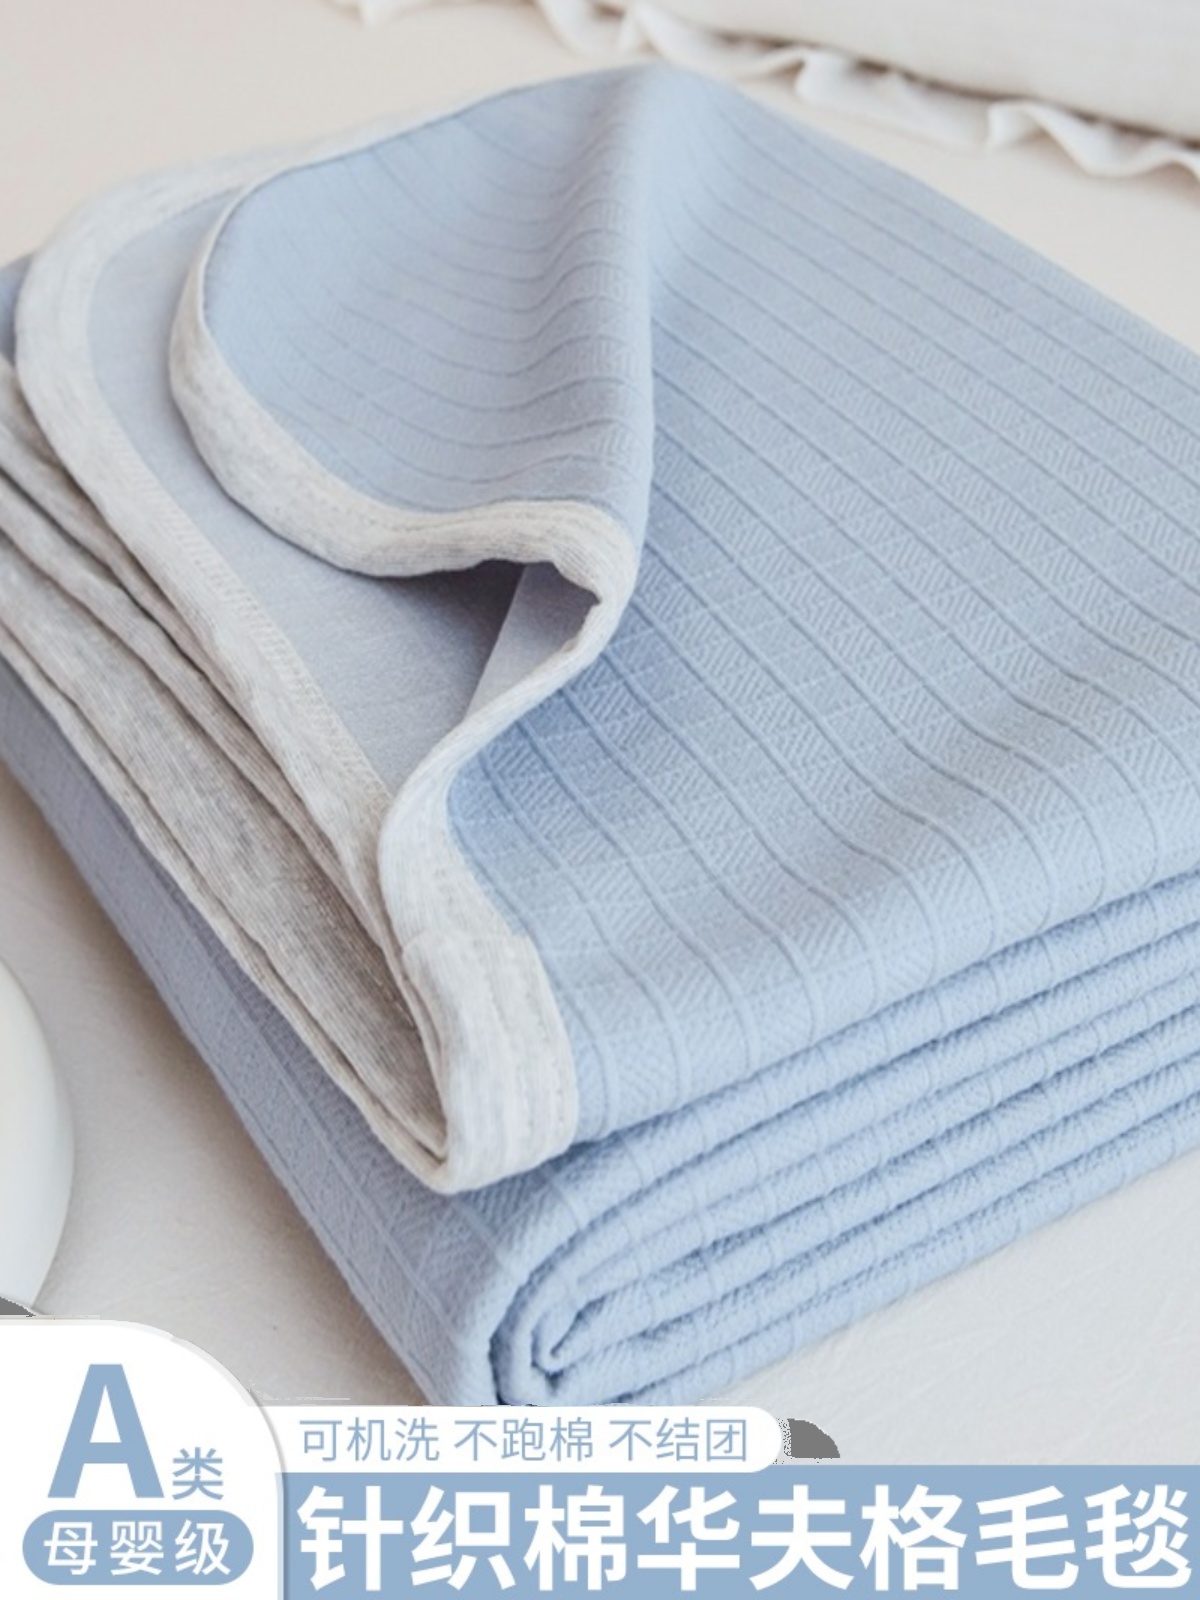 針織棉華夫格雙人毯純正棉質舒適透氣夏季涼爽沙發毯毛巾被子多功能